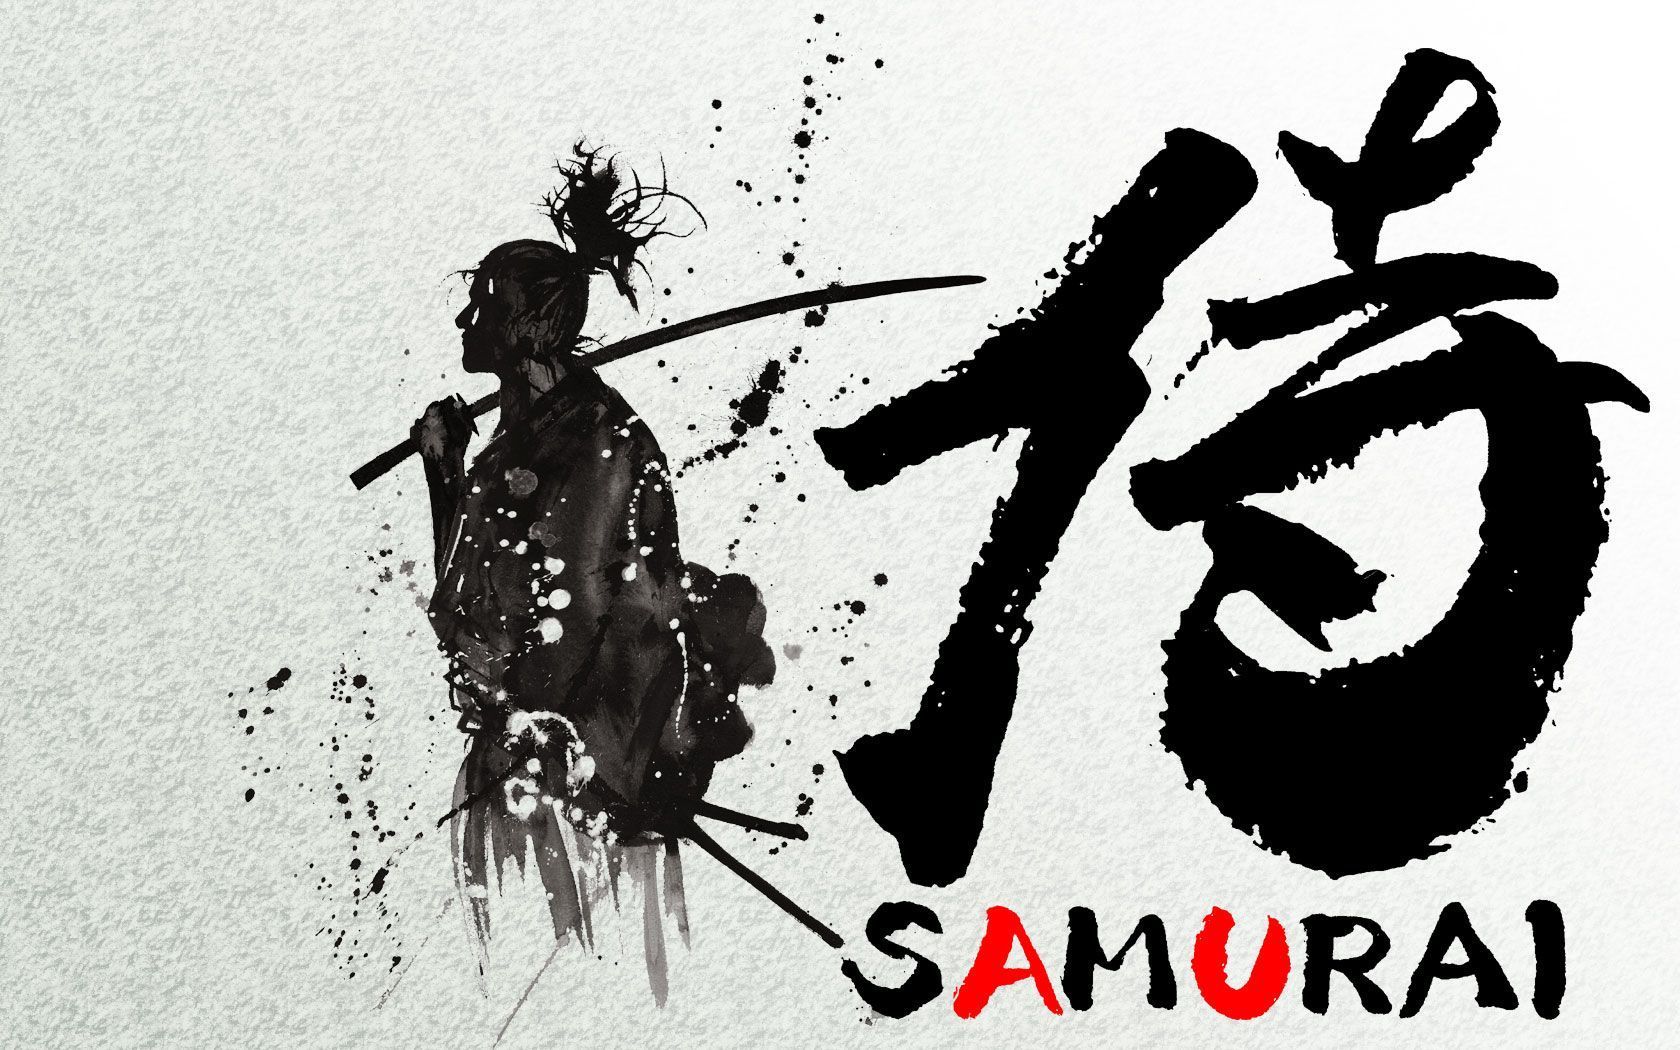 General 1680x1050 samurai warrior katana artwork